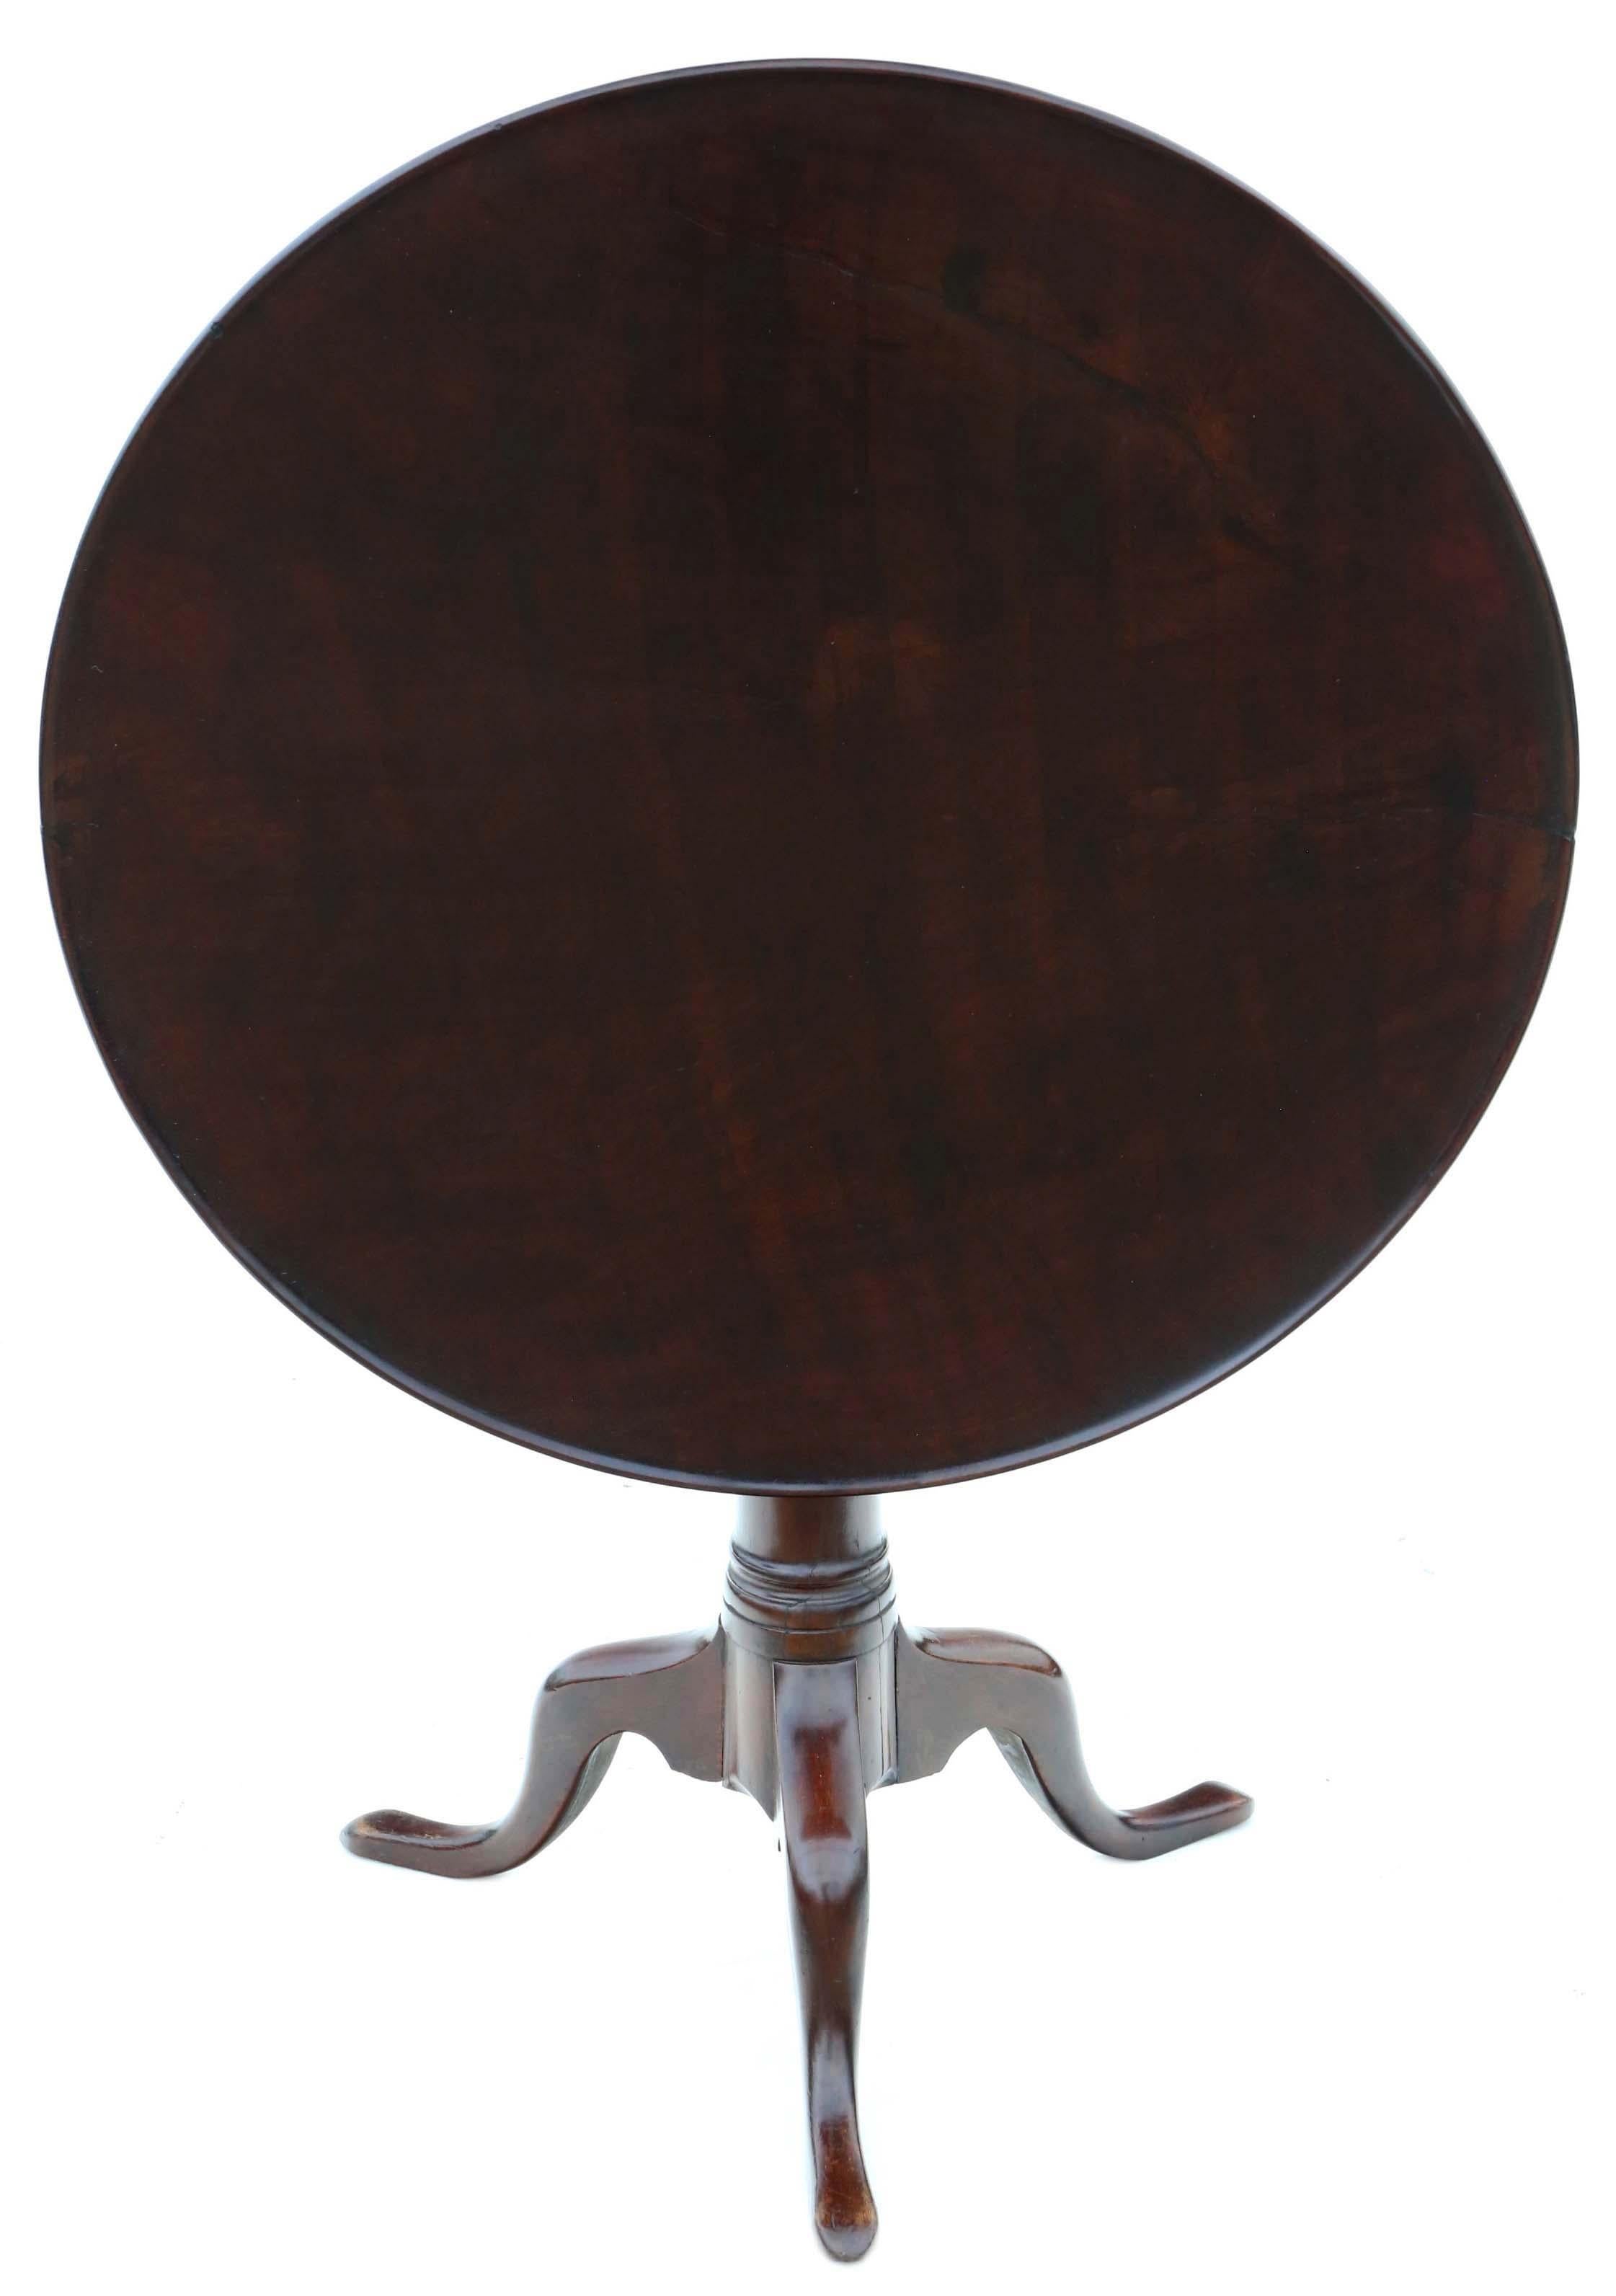 Antiker georgianischer Mahagoni-Tisch mit kippbarer Tischplatte aus dem 18. Es handelt sich um ein seltenes frühes Stück, das eine solide Struktur mit sicheren Verbindungen und einem funktionierenden Verschluss aufweist. Der Tisch verfügt über einen